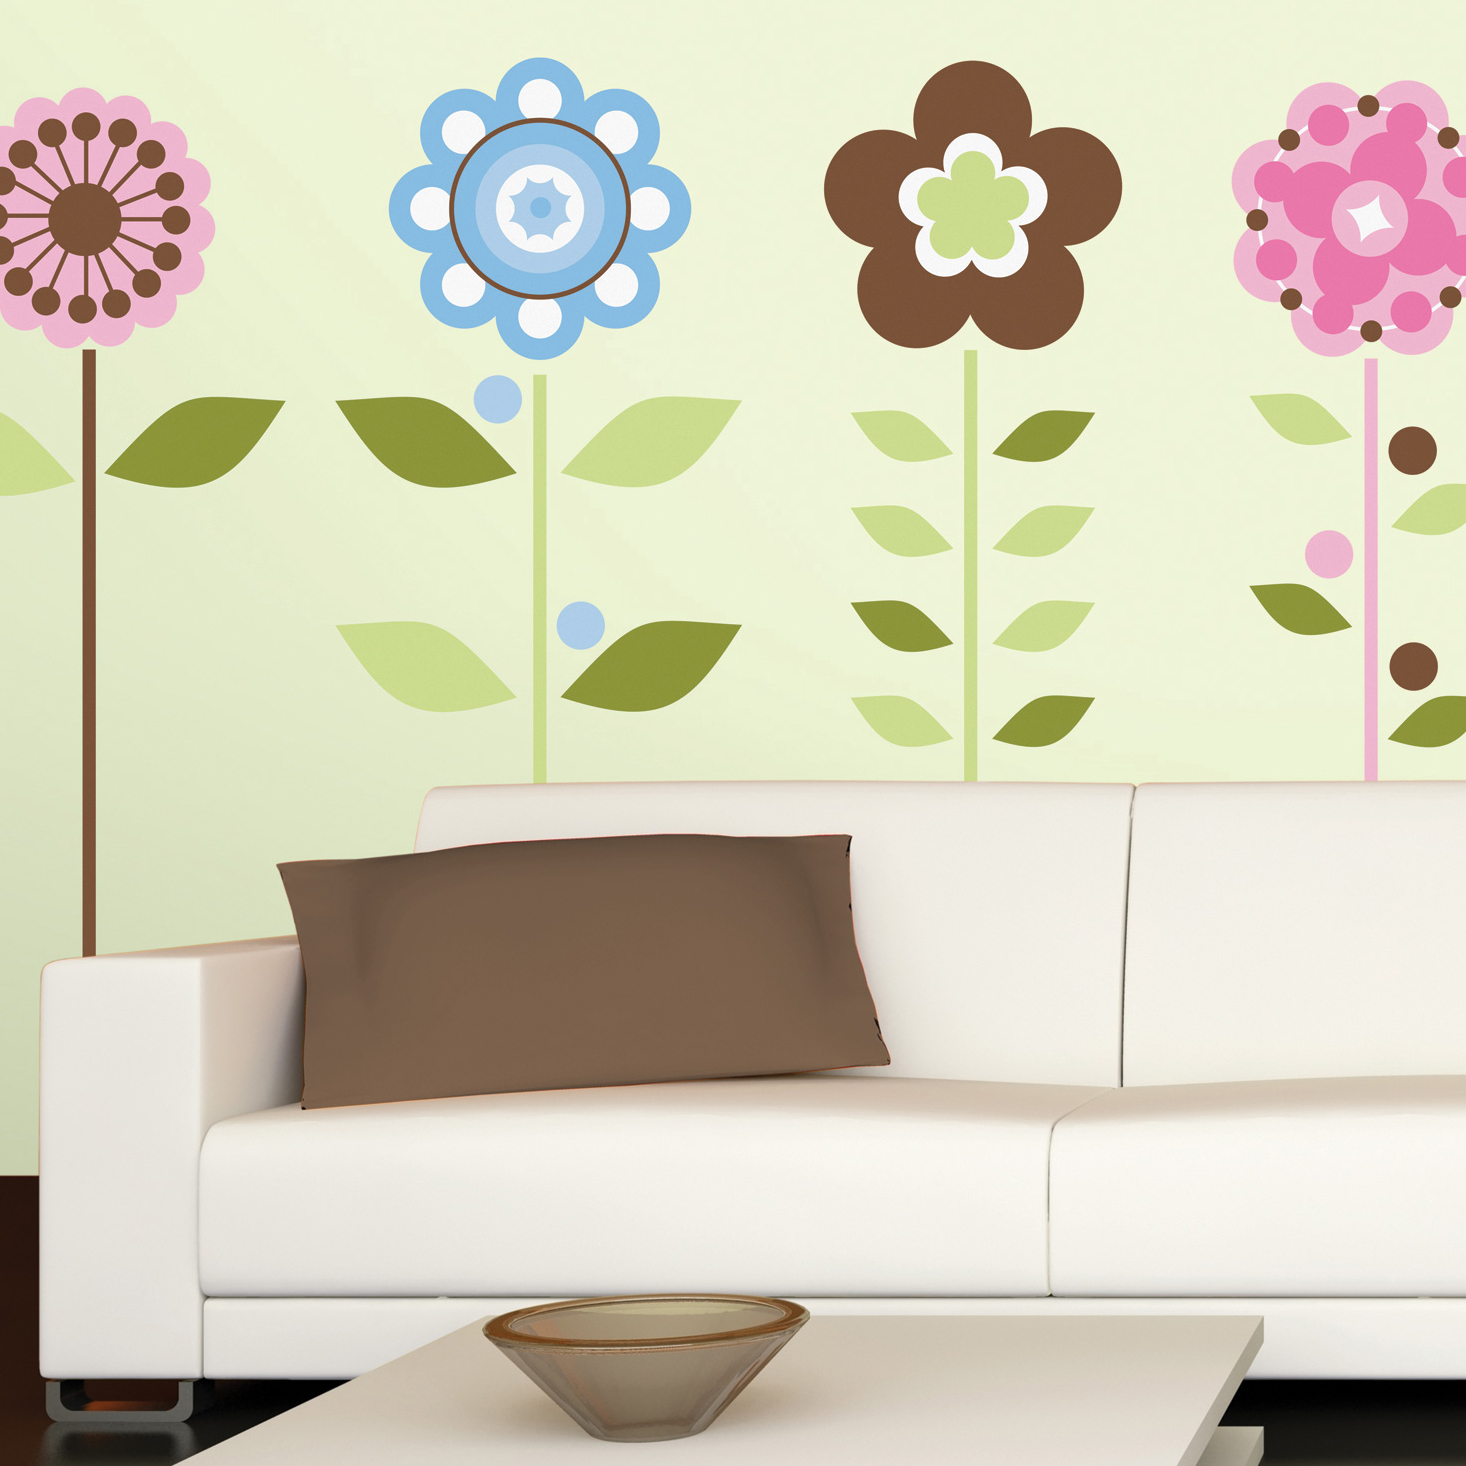 Growing flowers mural - RoomMates